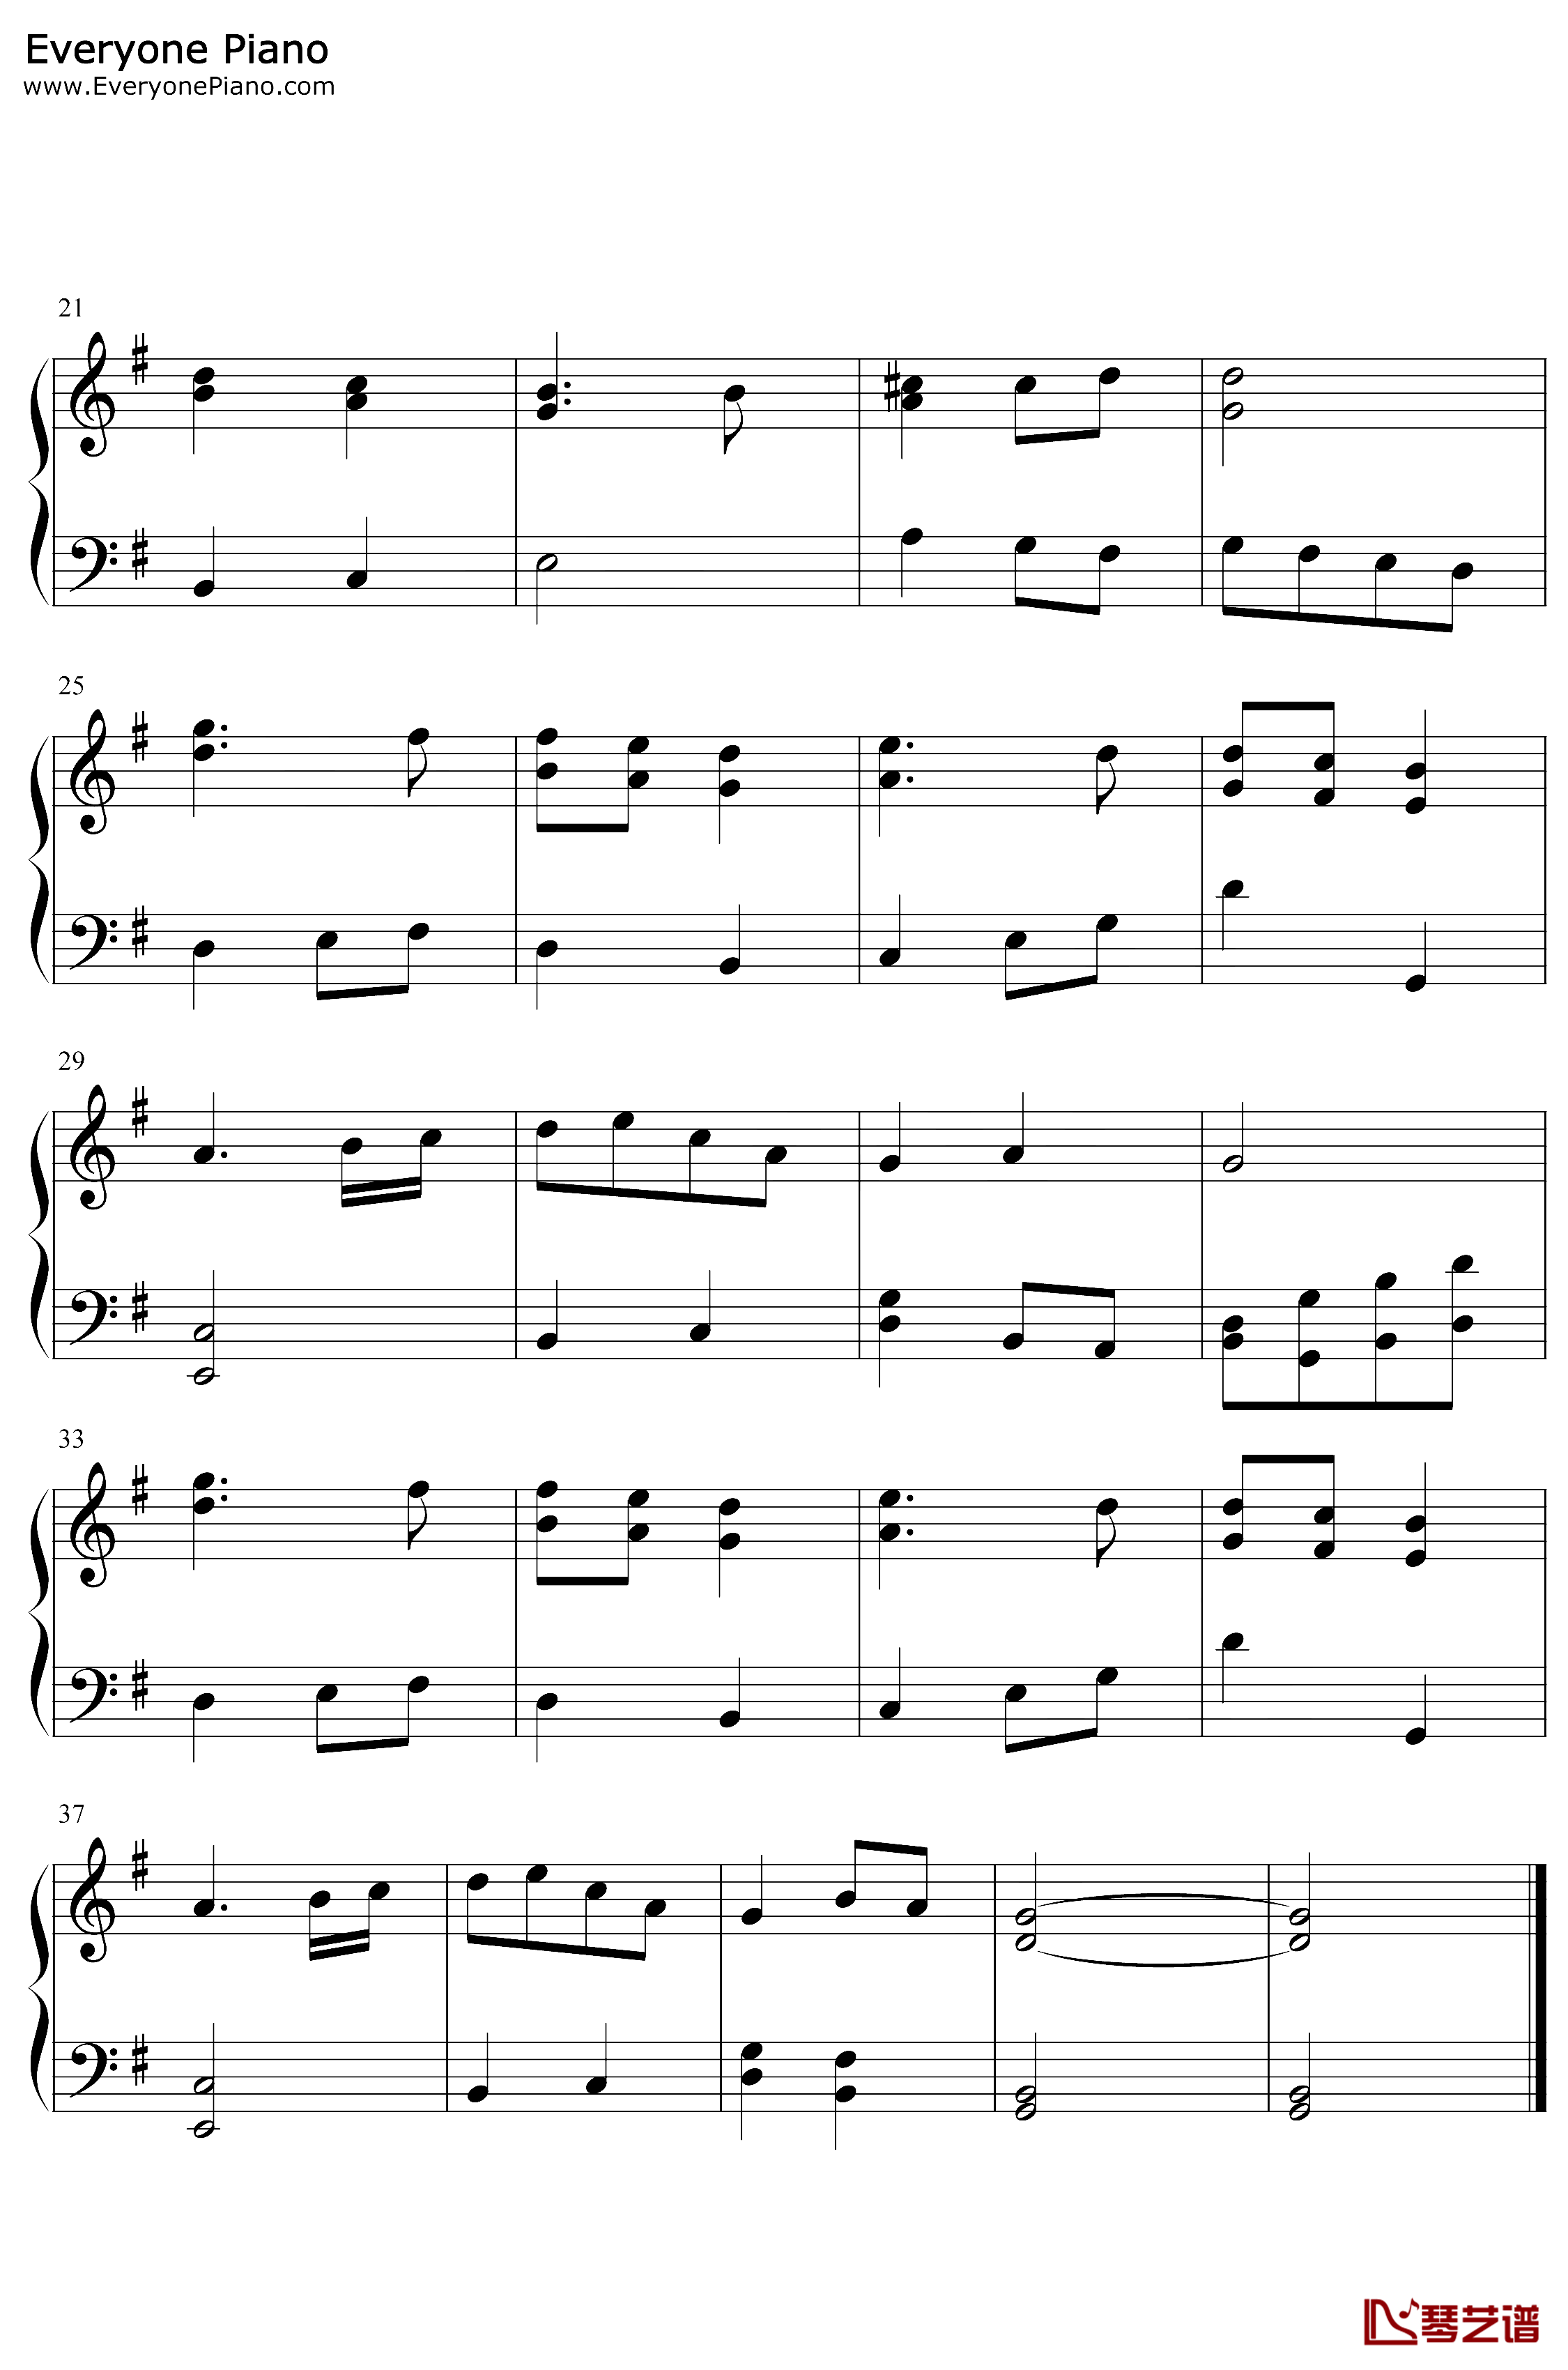 德国国歌钢琴谱-弗朗茨·约瑟夫·海顿-德意志之歌2